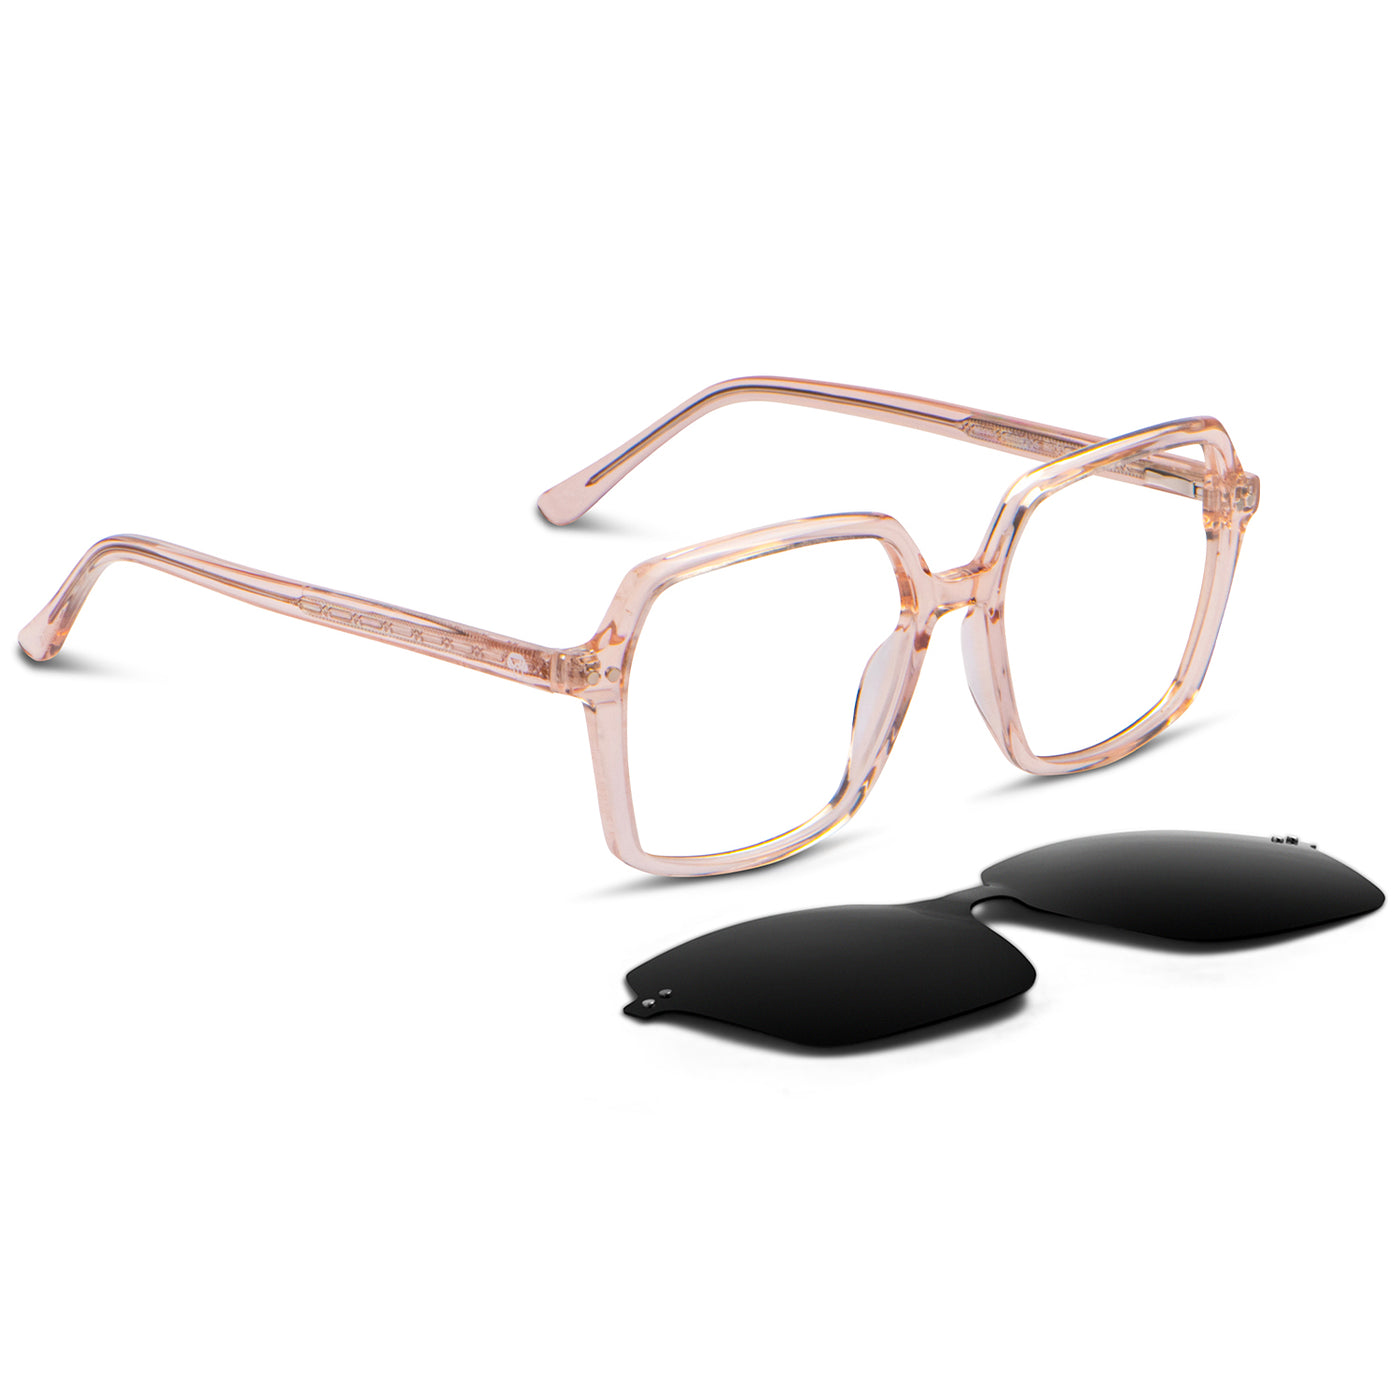 marcos opticos octagonales con sobre lente clip sol iman polarizado para hombre y mujer de color durazno o rosado